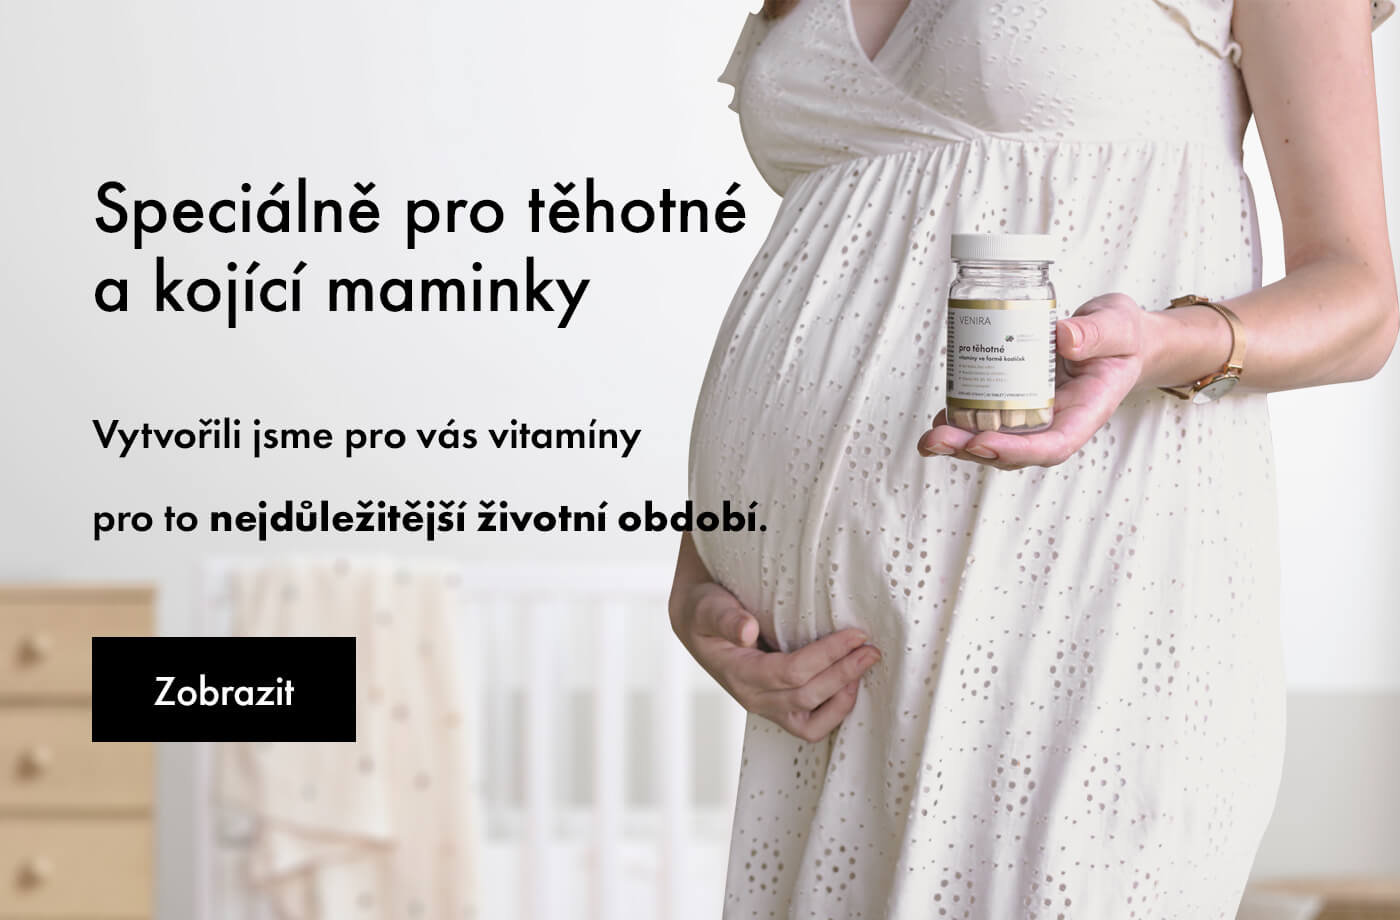 Speciálně pro těhotné a kojící maminky